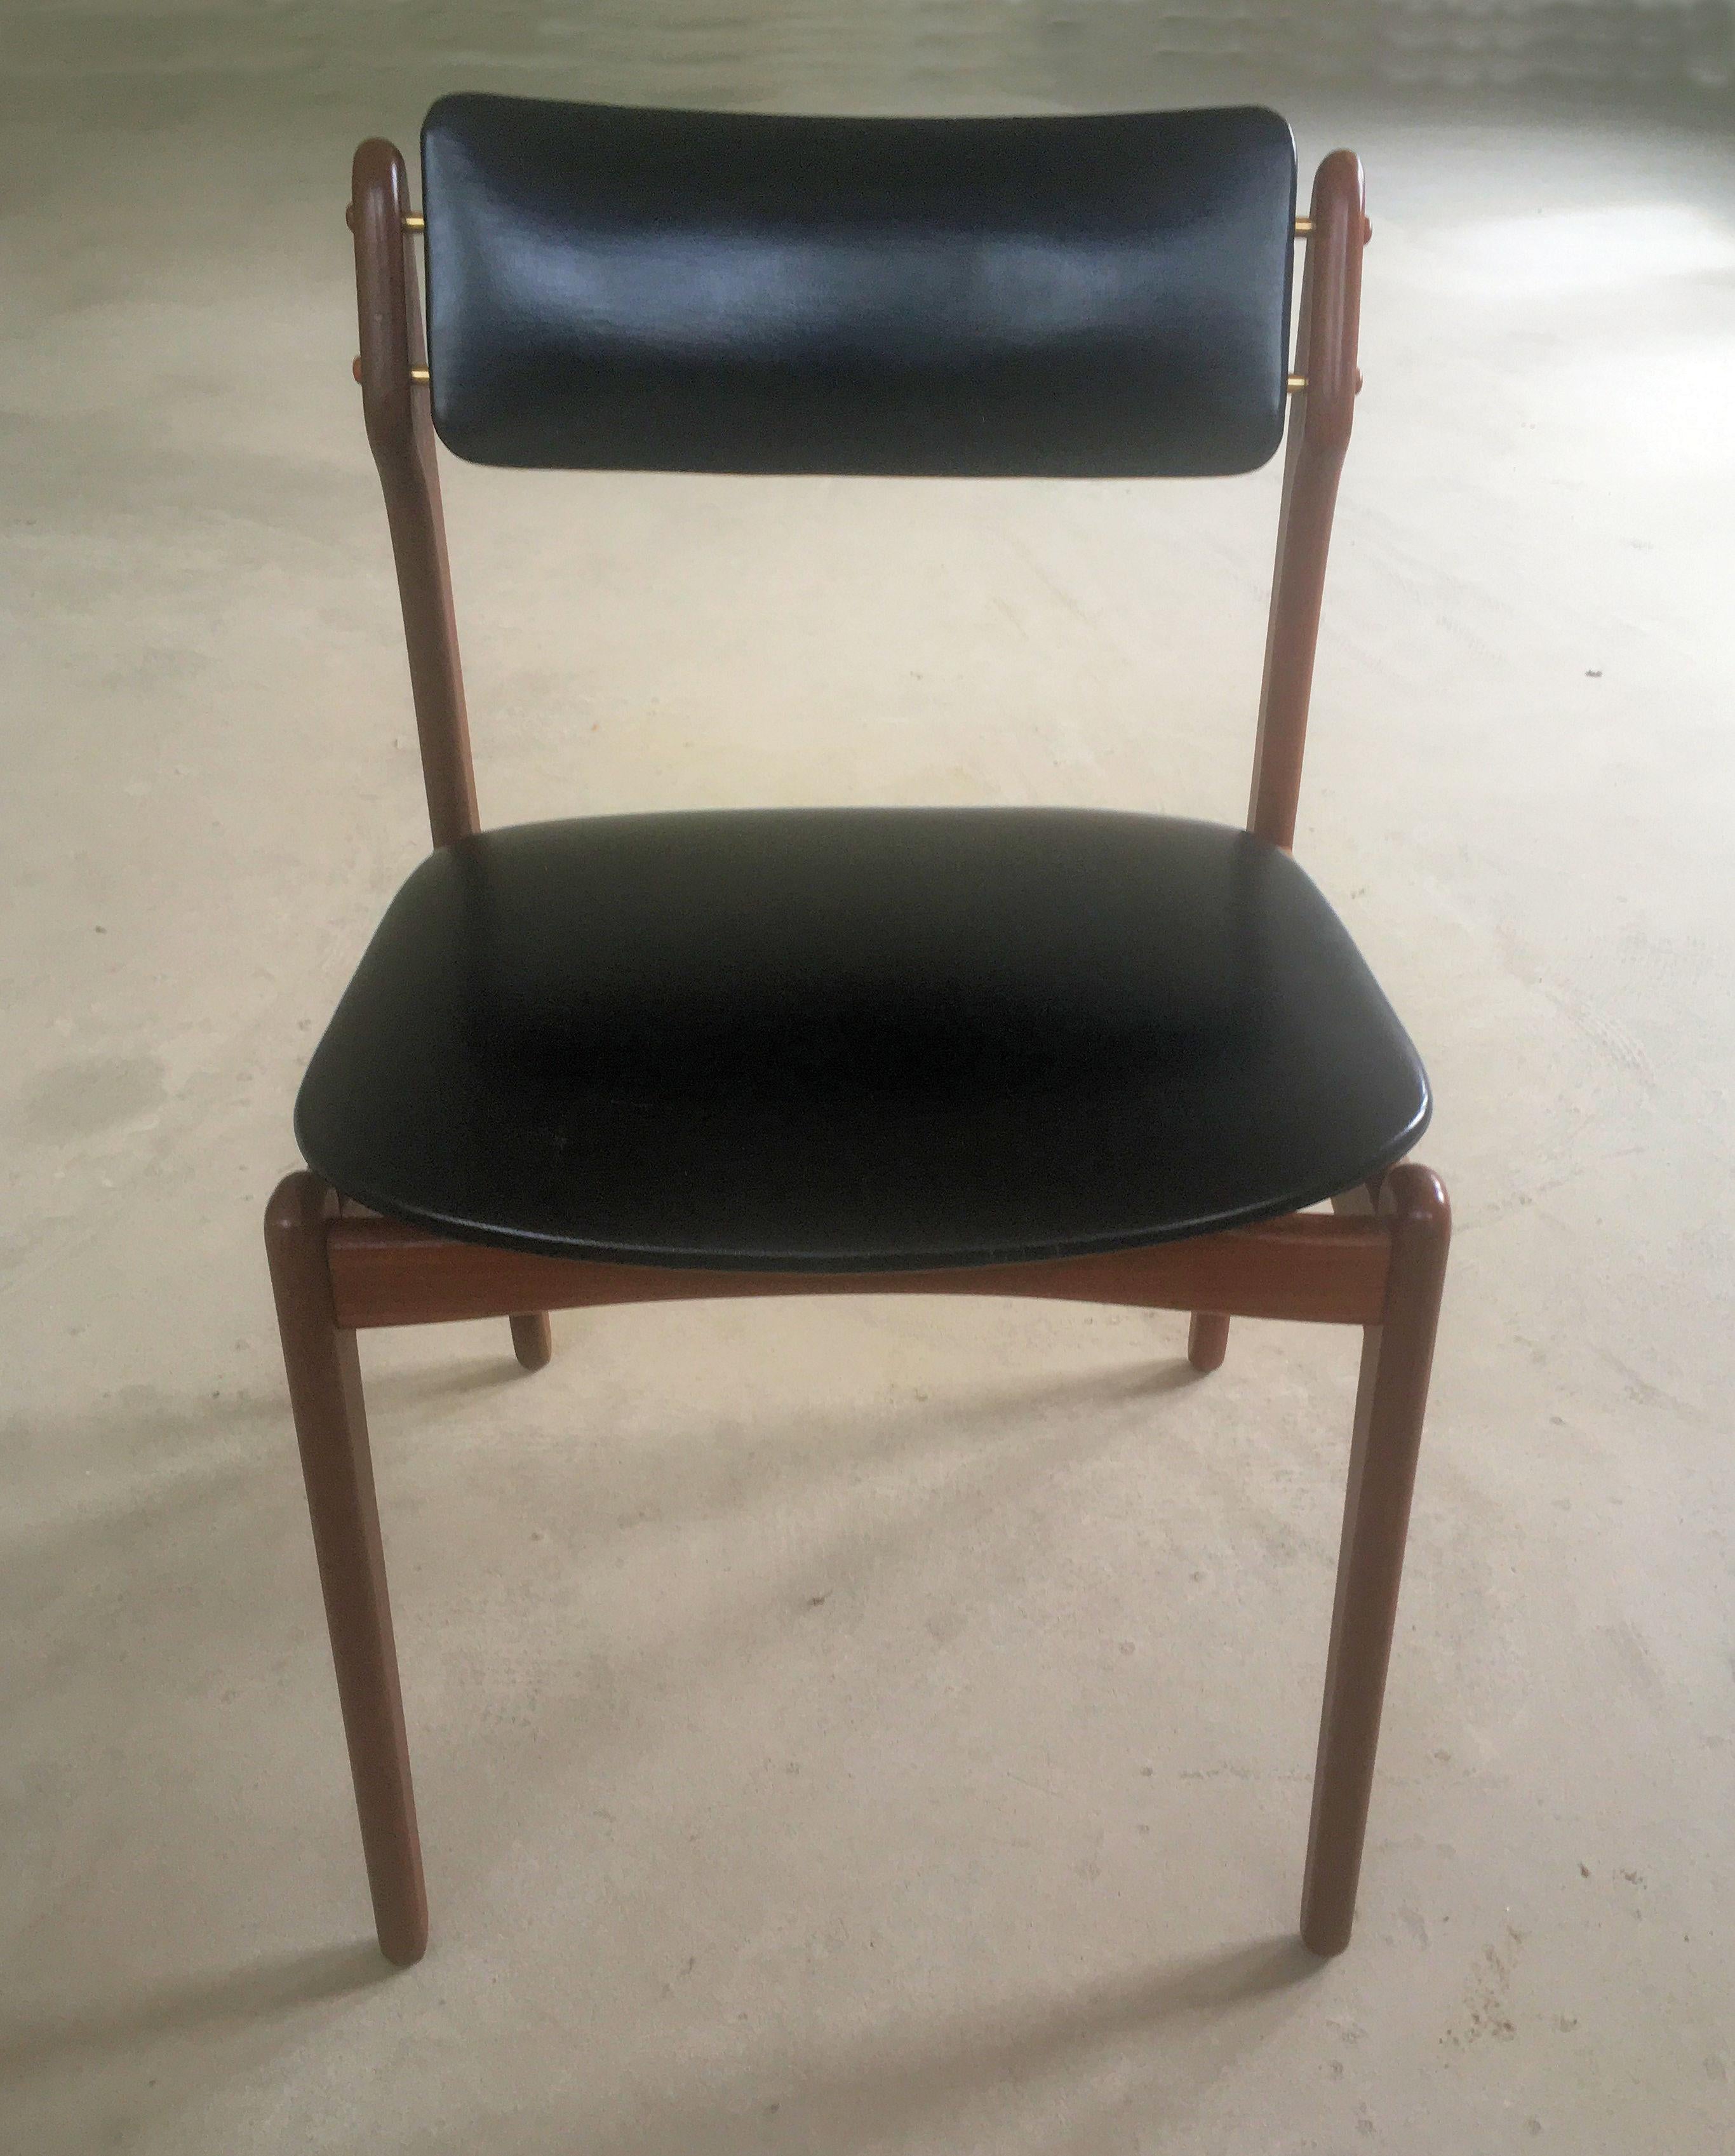 Erik Buch Esszimmerstühle aus Teakholz aus den 1960er Jahren.

Die Stühle sind eine Weiterentwicklung des von Erik Buchs entworfenen Esszimmerstuhls Modell 49, der für seine elegante, schwebende Sitzfläche bekannt ist. Hinzu kommen Details wie eine